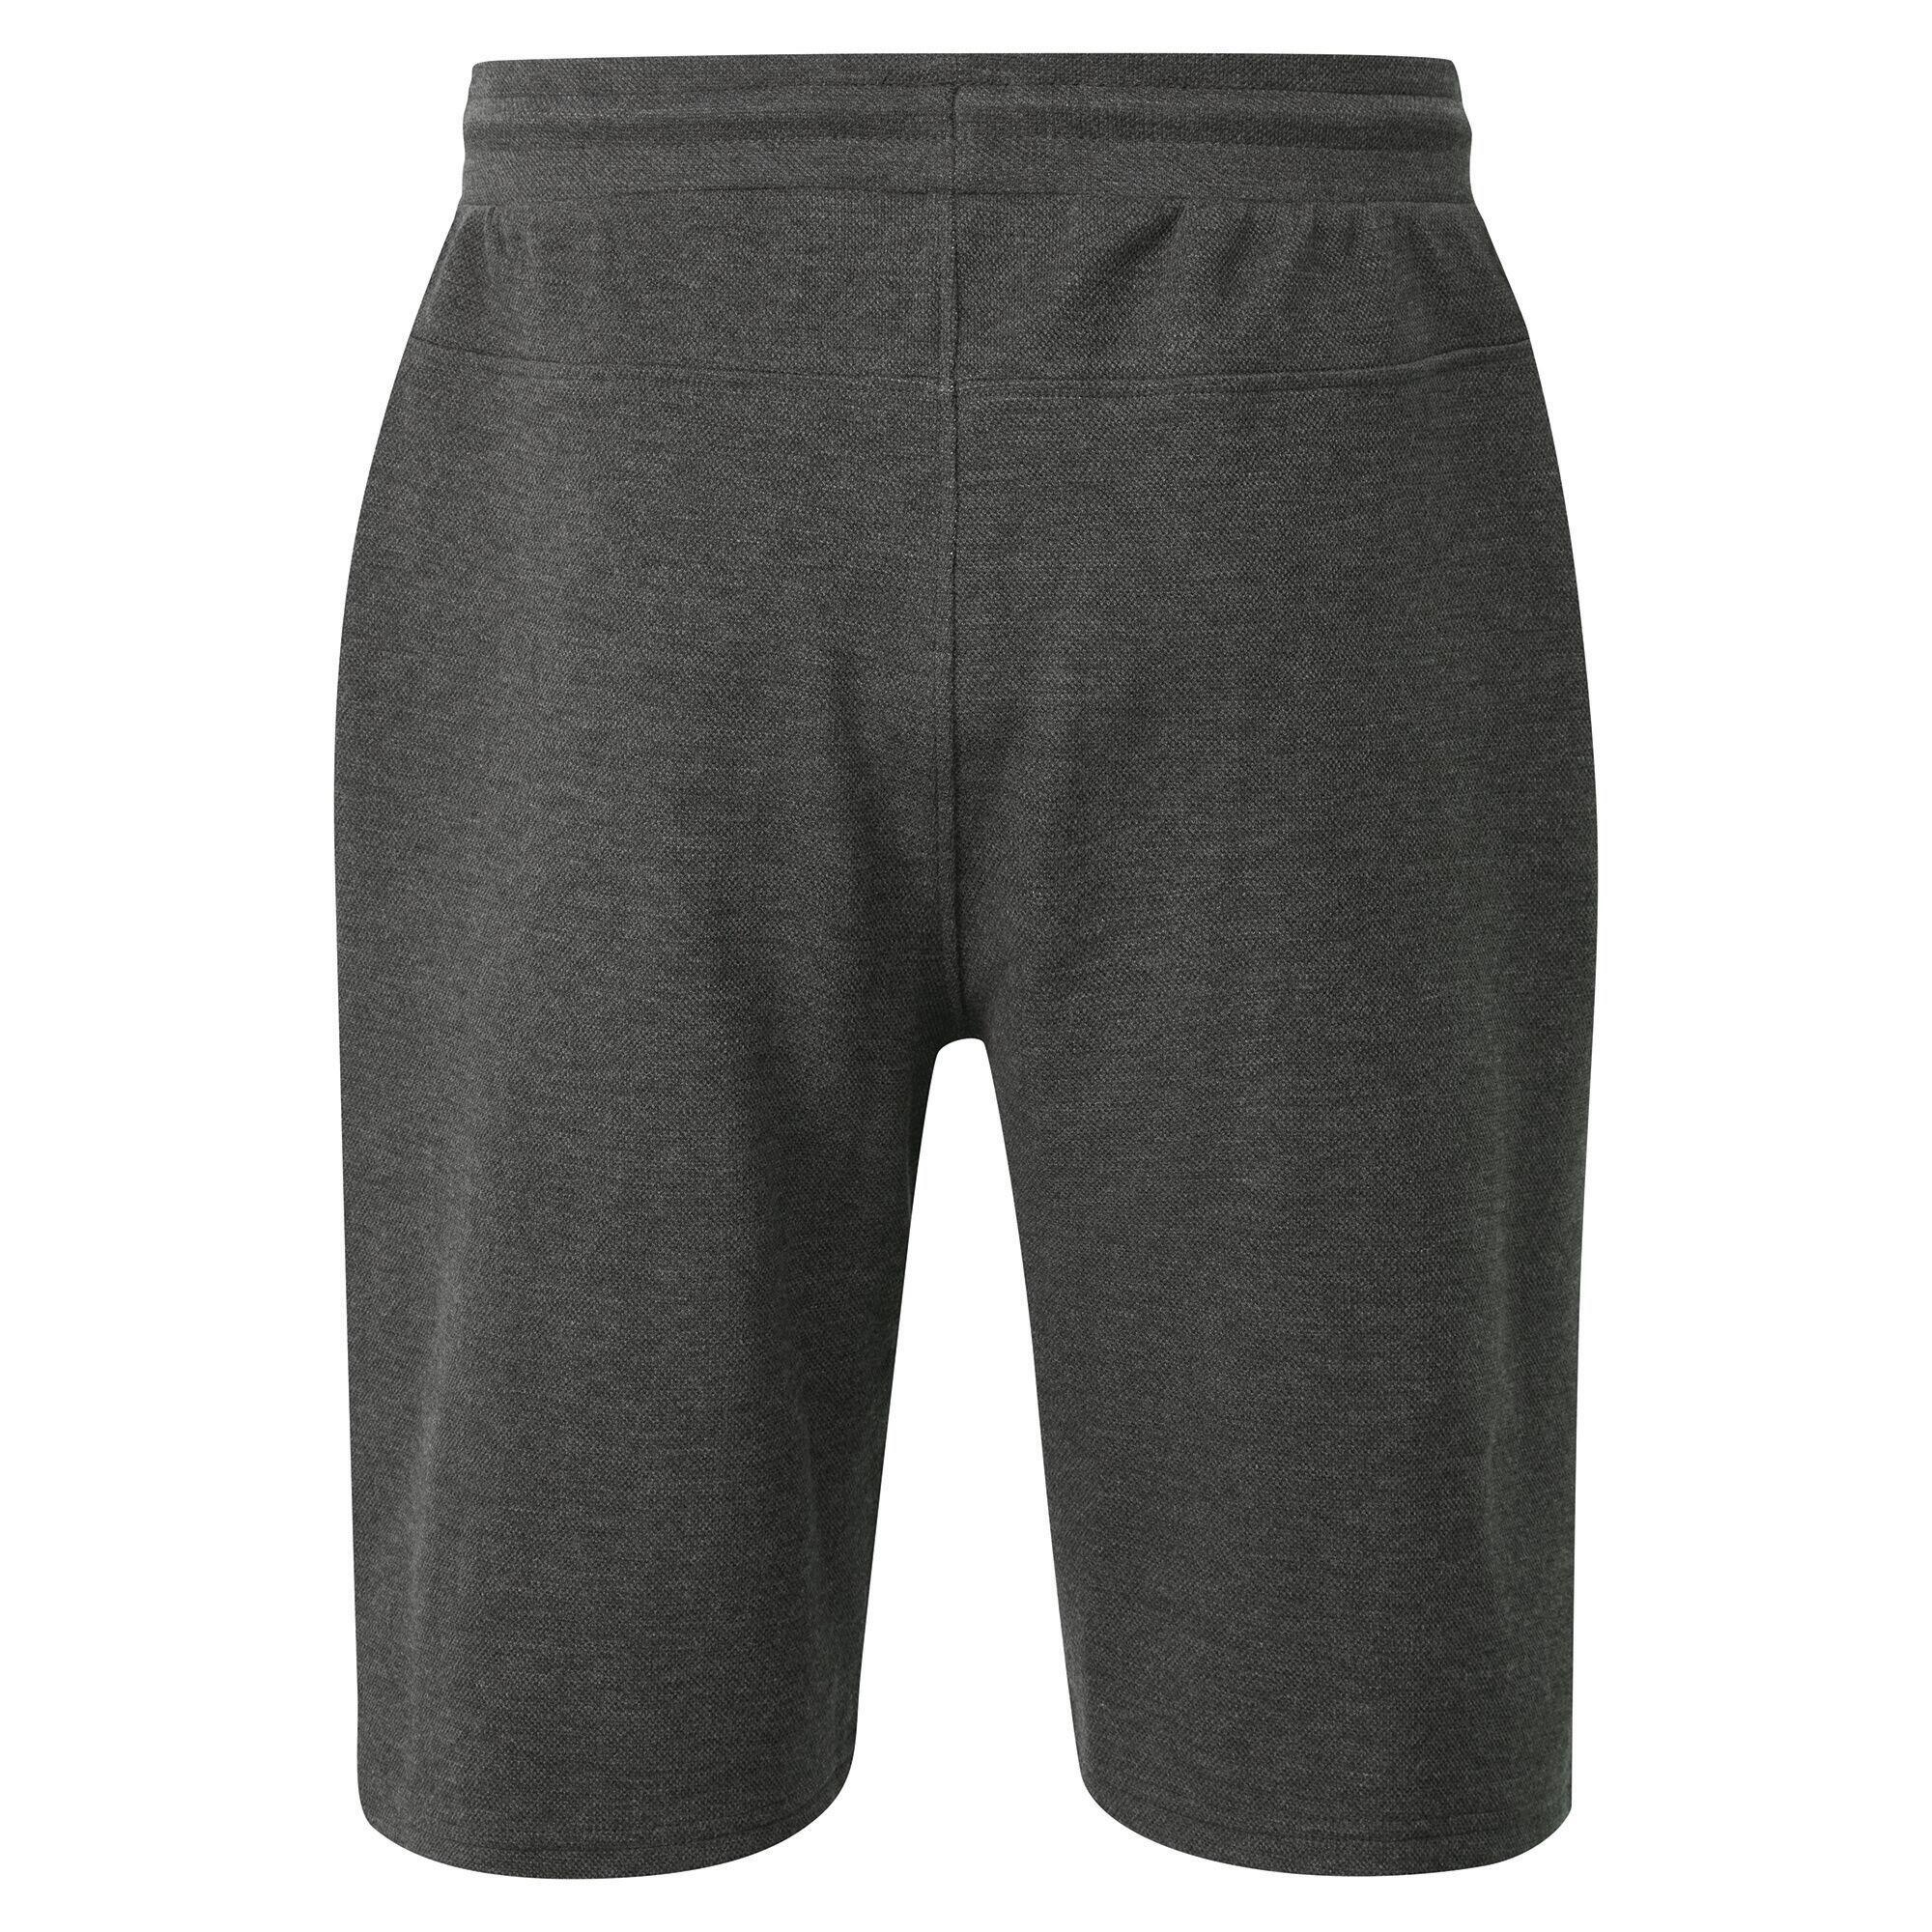 Mens Continual Drawstring Shorts (Charcoal Grey) 2/5